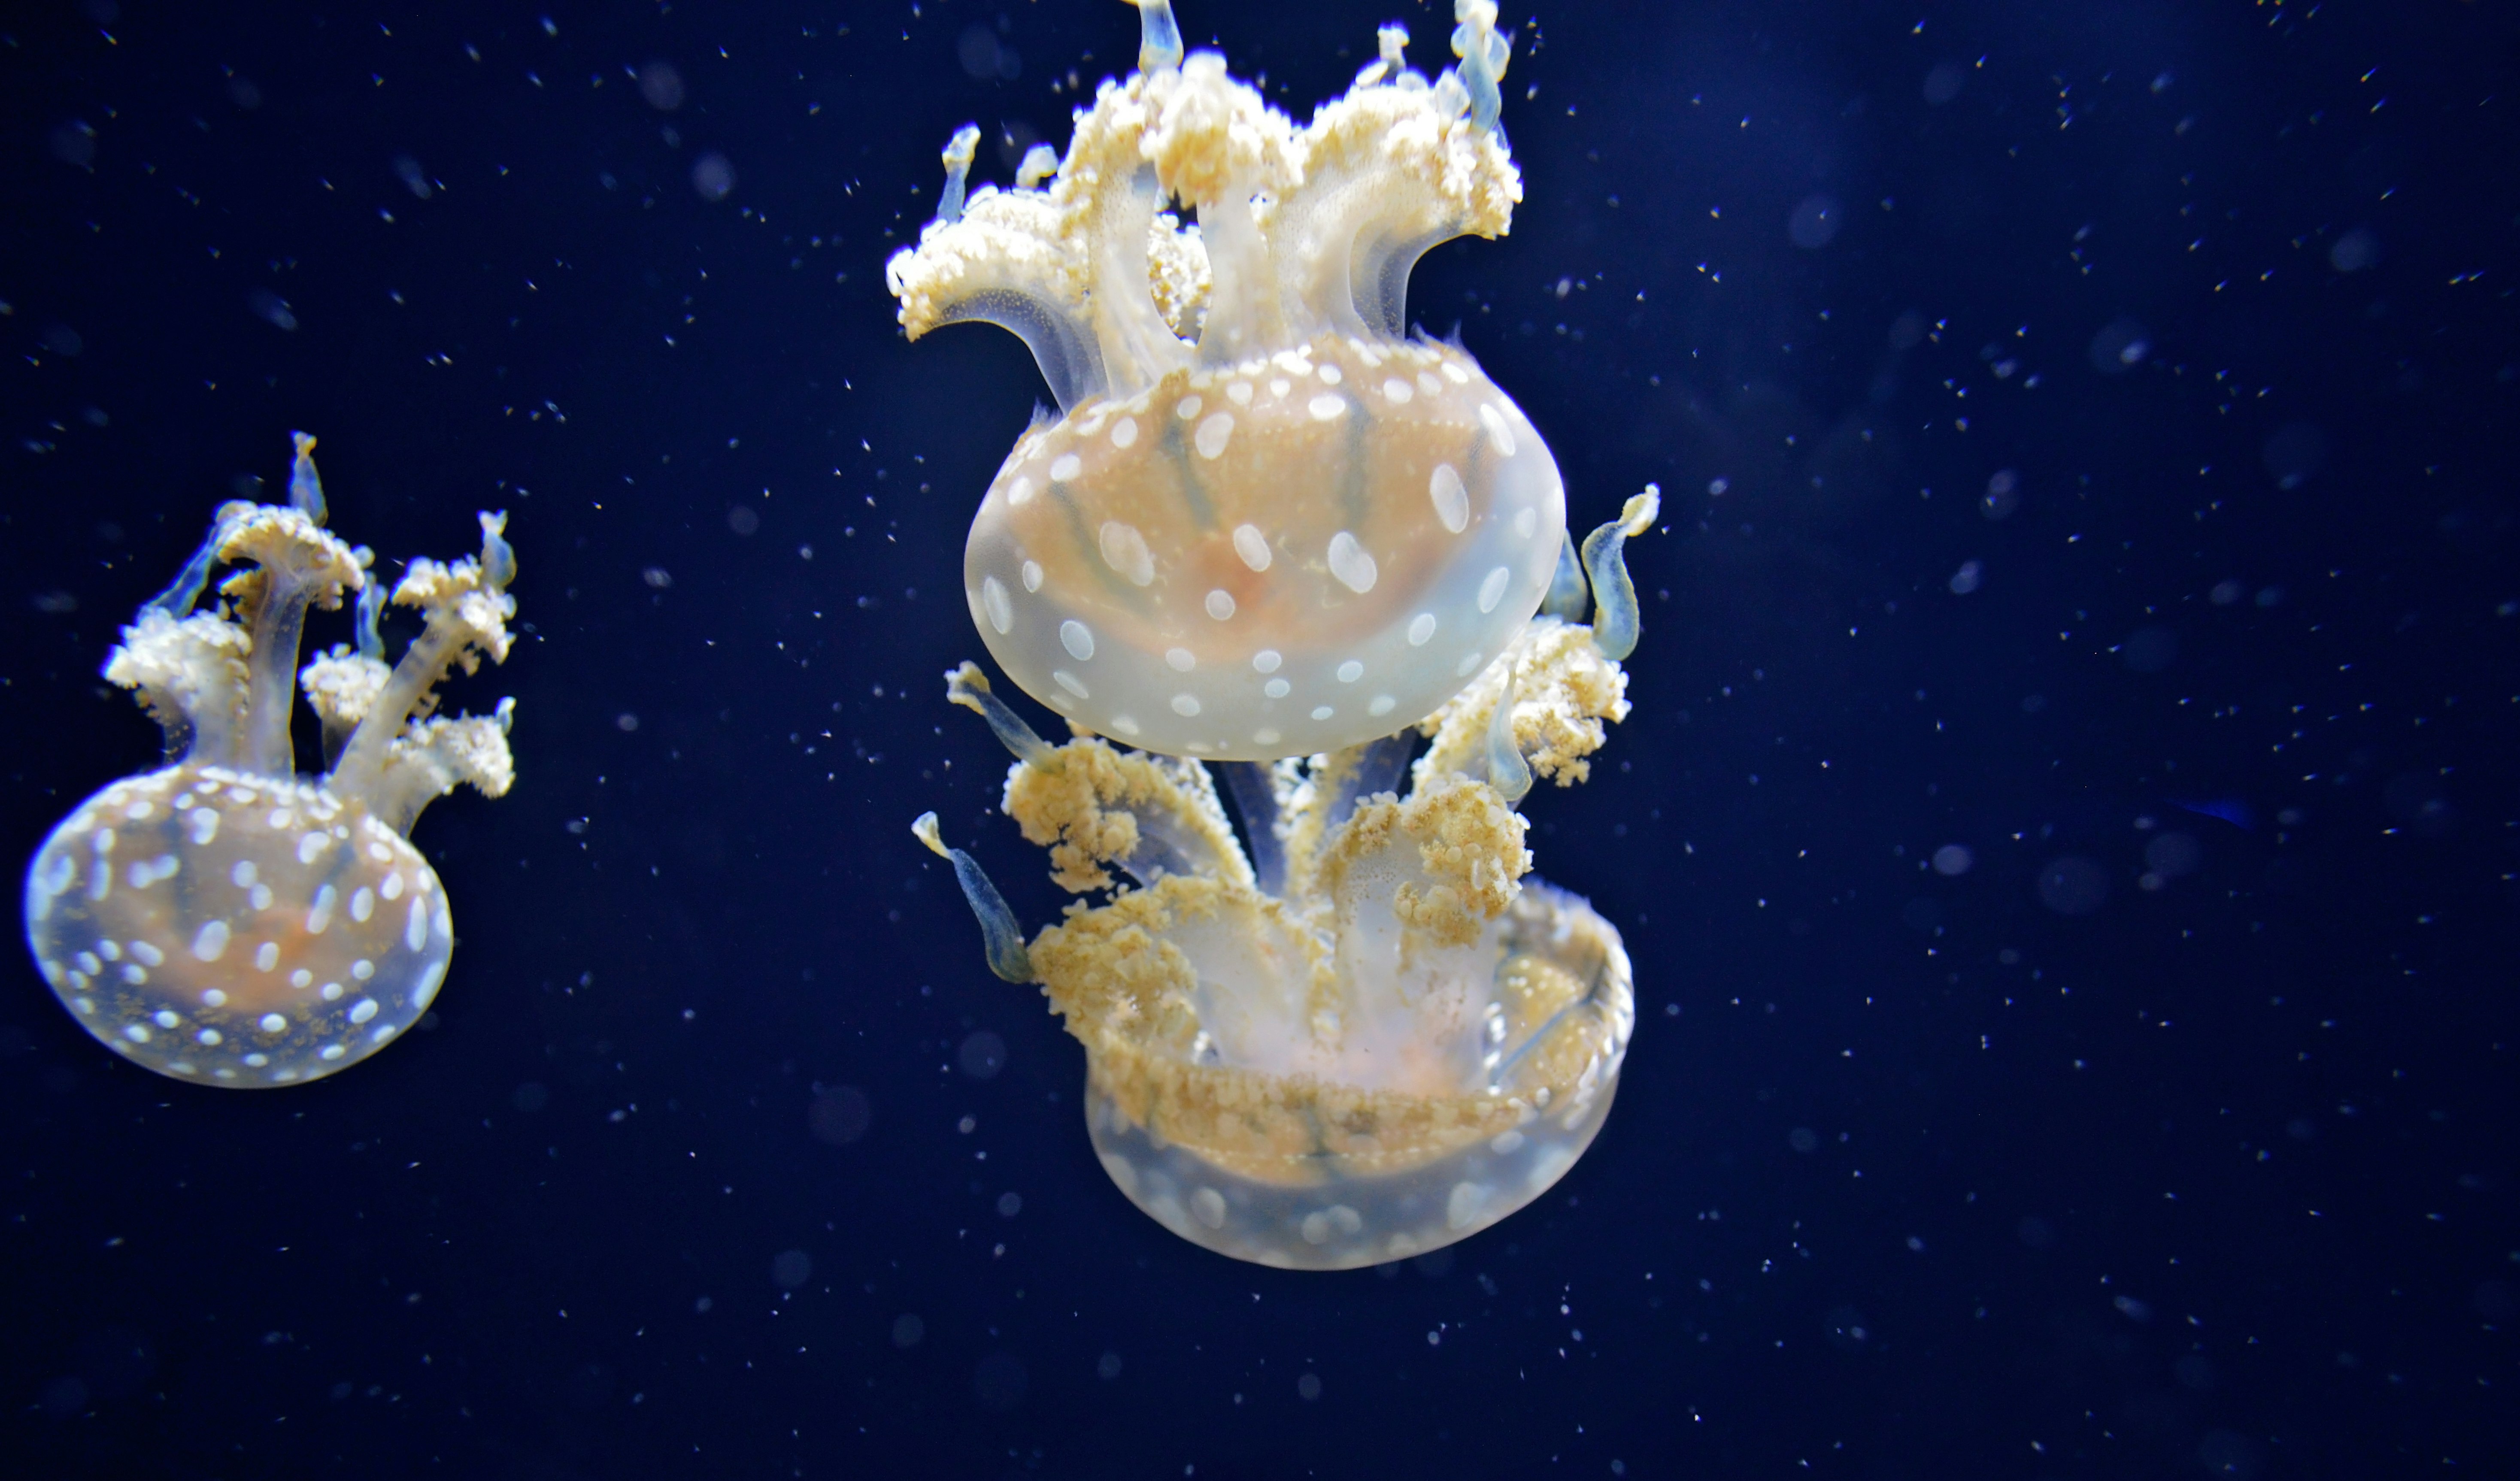 three white-and-yellow jellyfishes swimming underwater